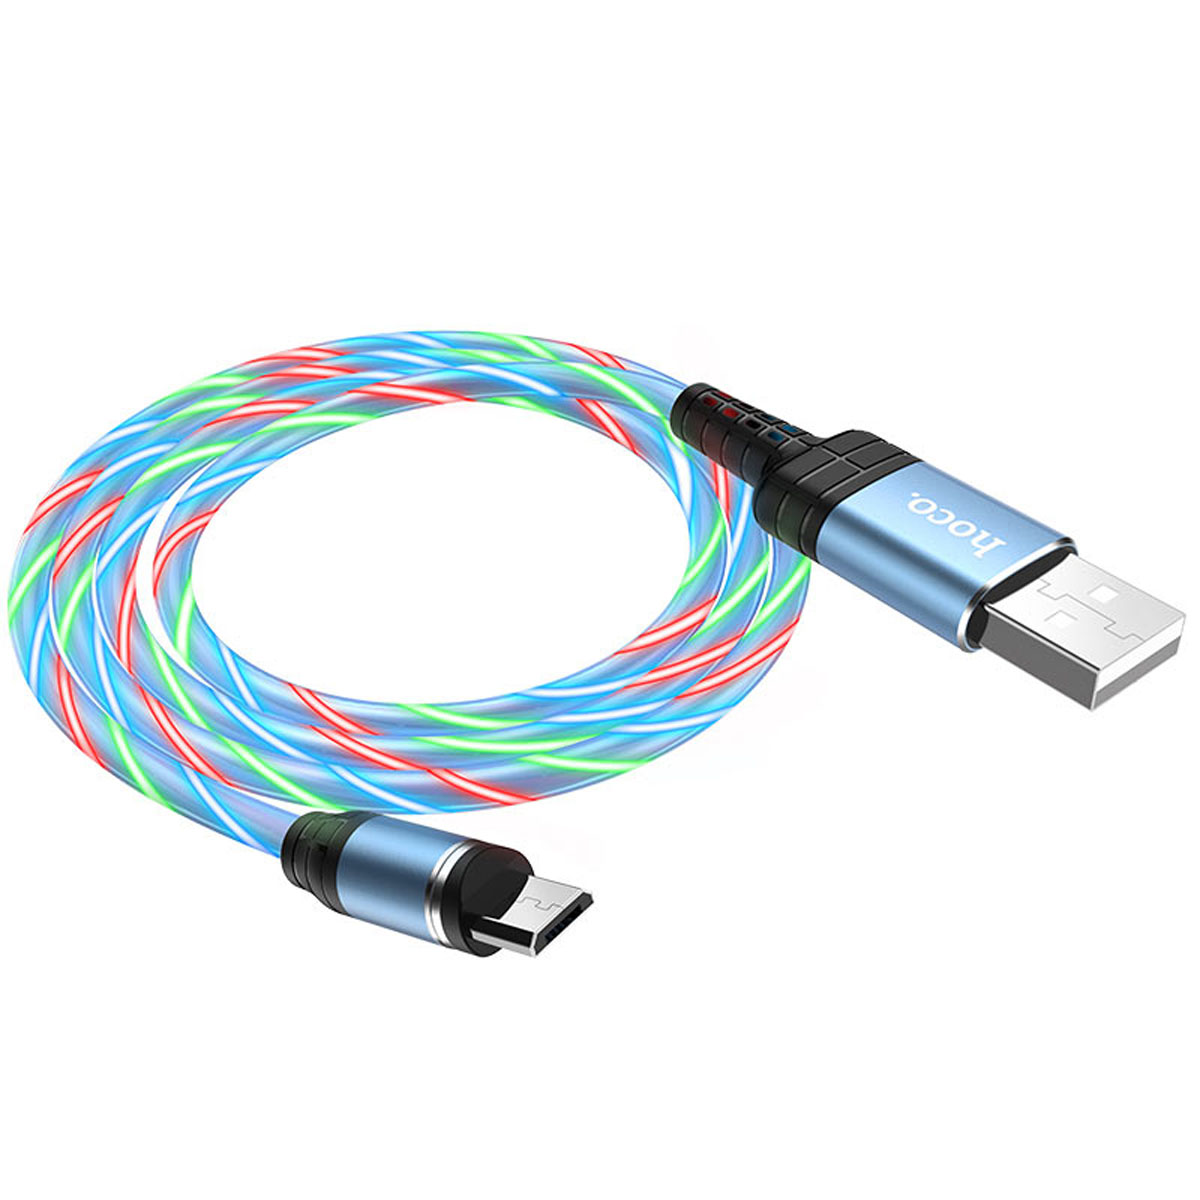 Магнитный зарядный кабель HOCO U90 Micro USB, LED подсветка, 2A, длина 1 метр, цвет синий